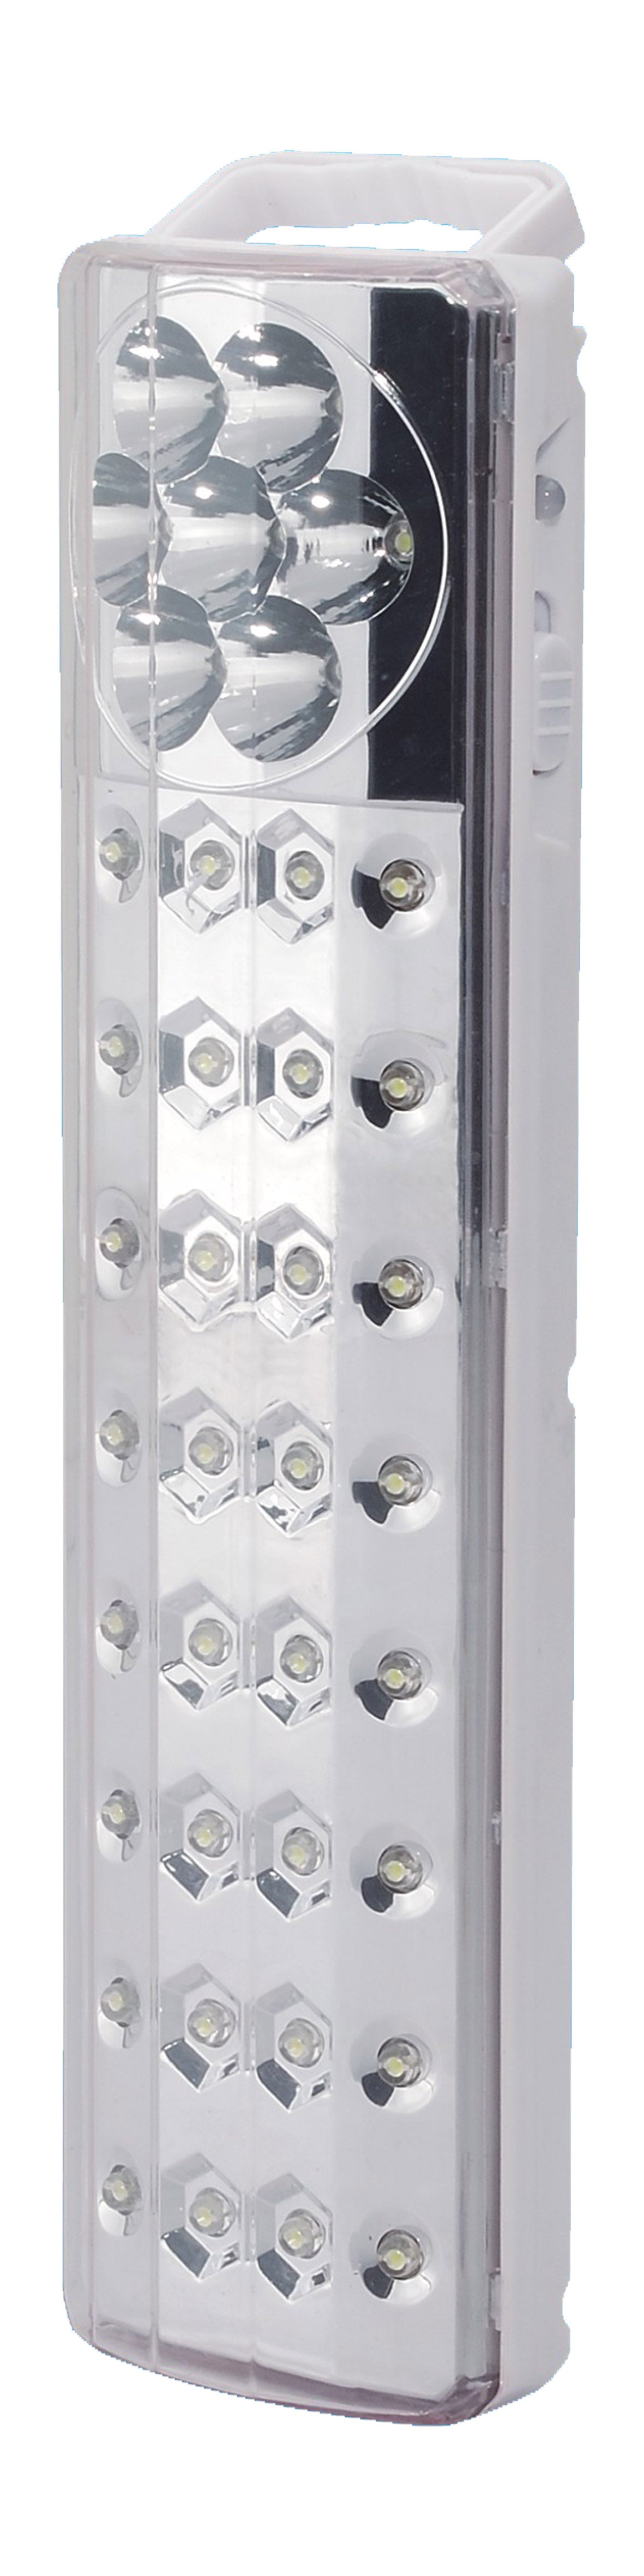 LAMPE LED DE SECOURS 32+7 LED clicktofournisseur.com